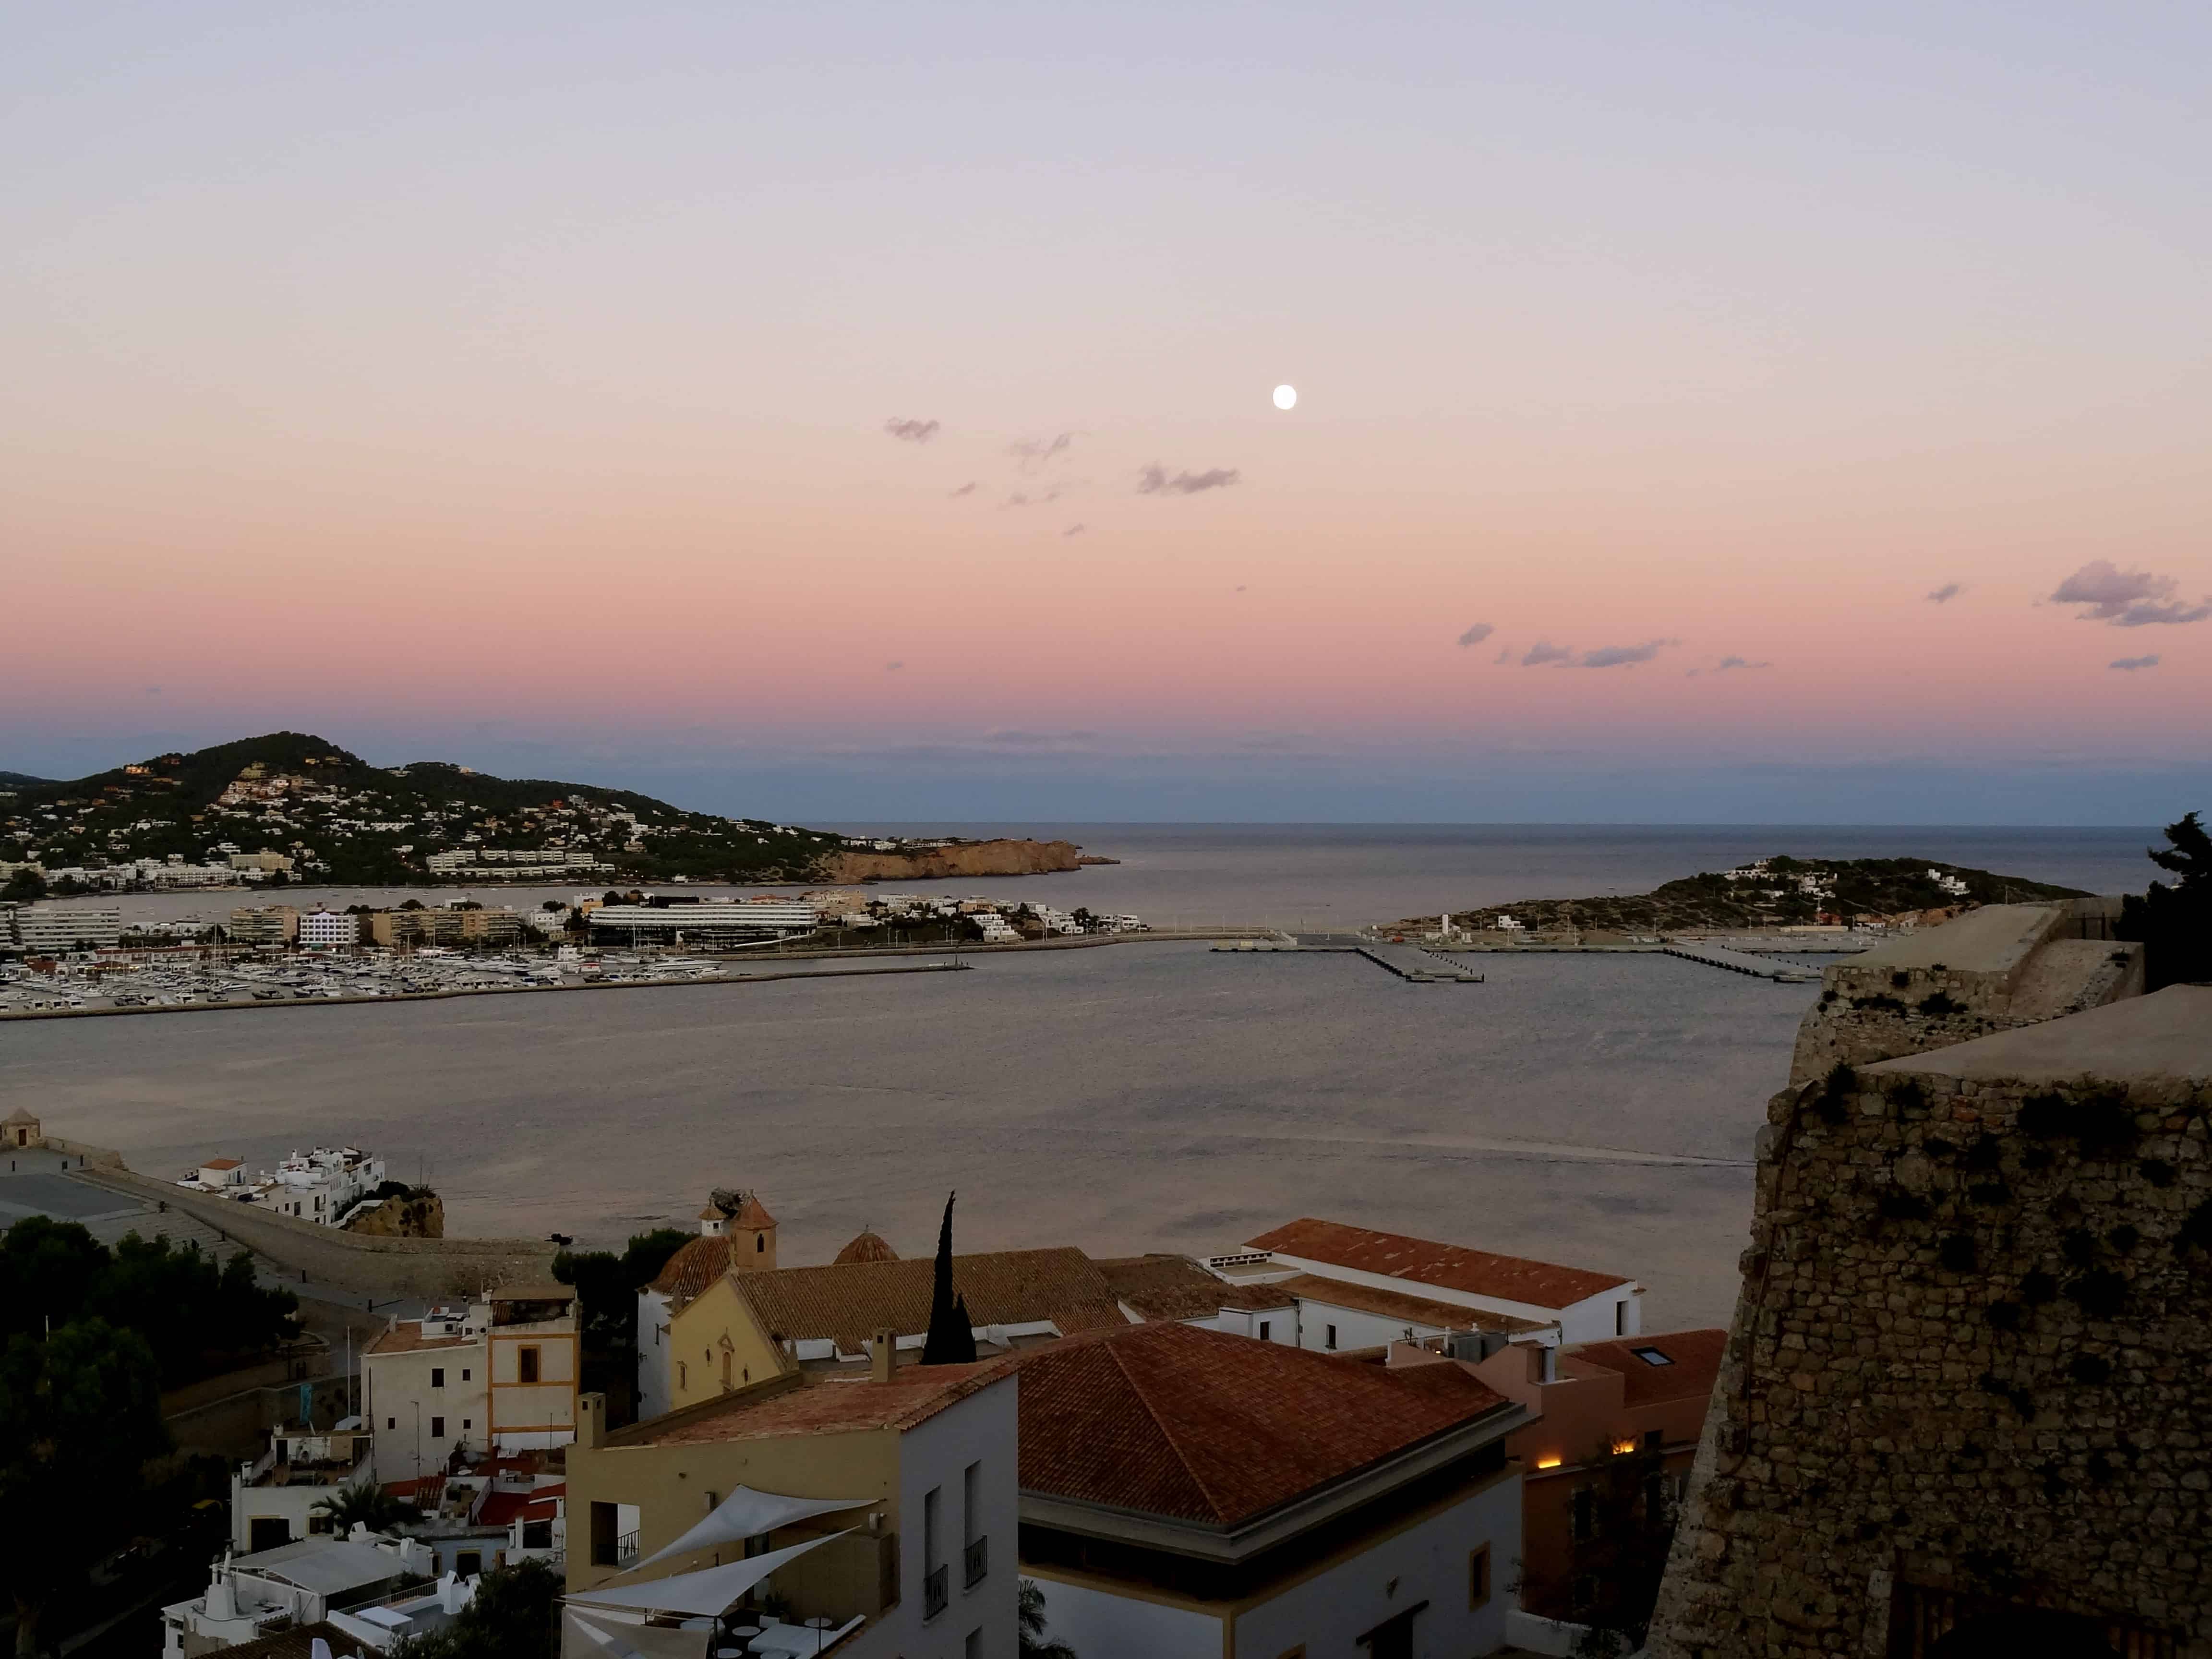 Ibiza pictures, Ibiza sunset, Ibiza moonrise, Ibiza blogs